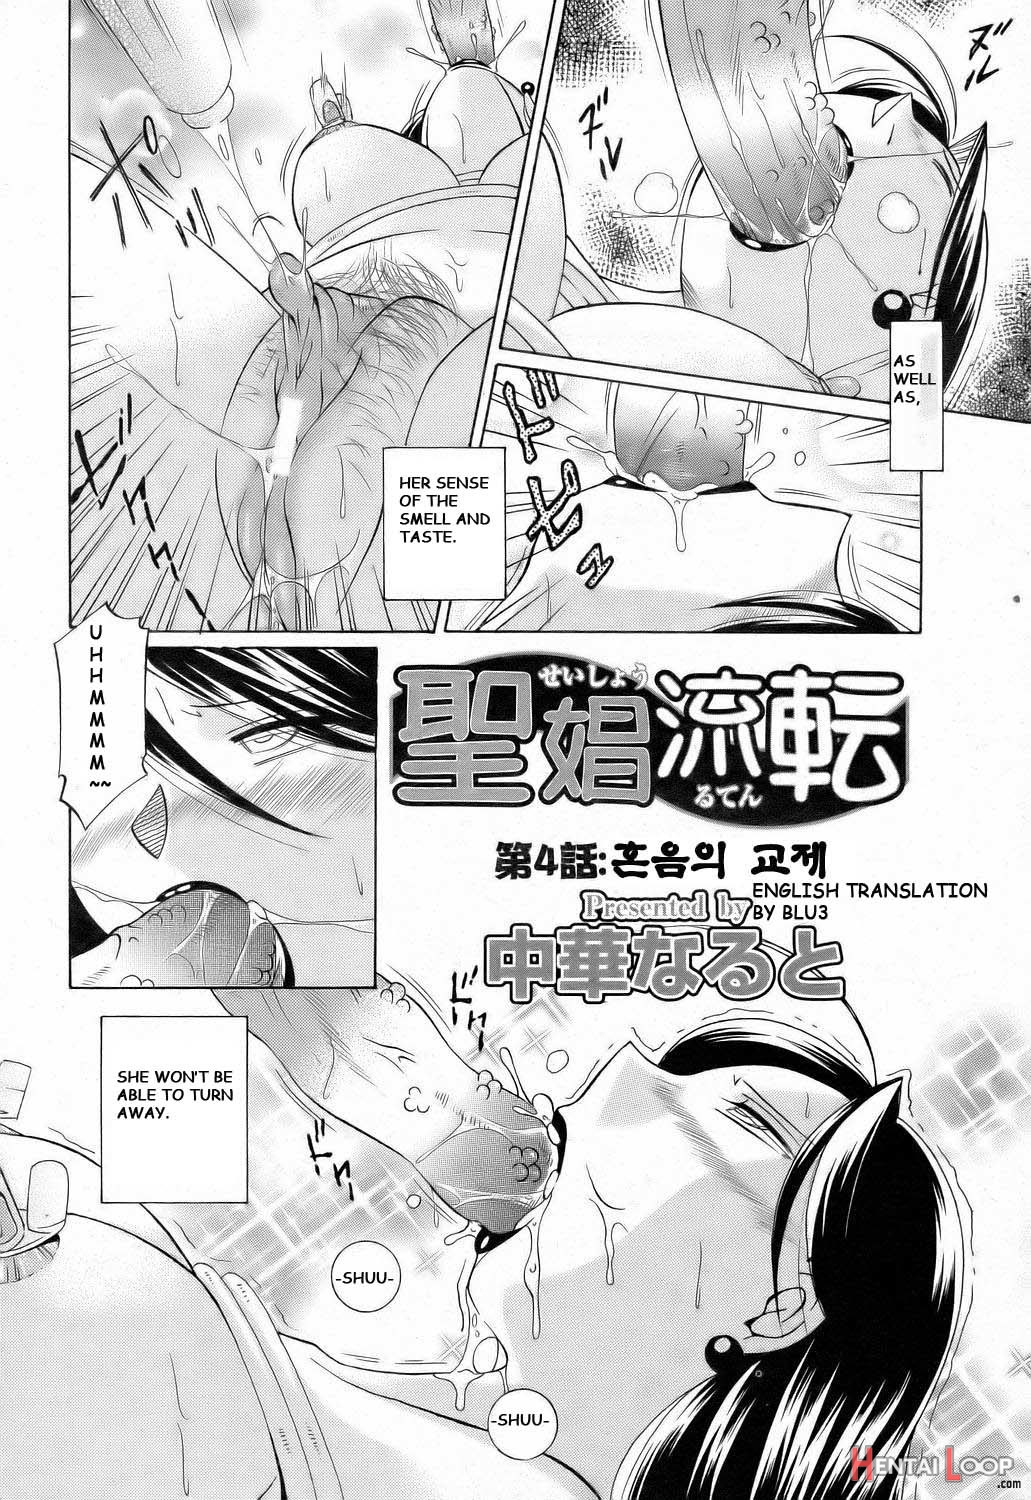 Shoushou Ruten Ch. 4-5 page 2